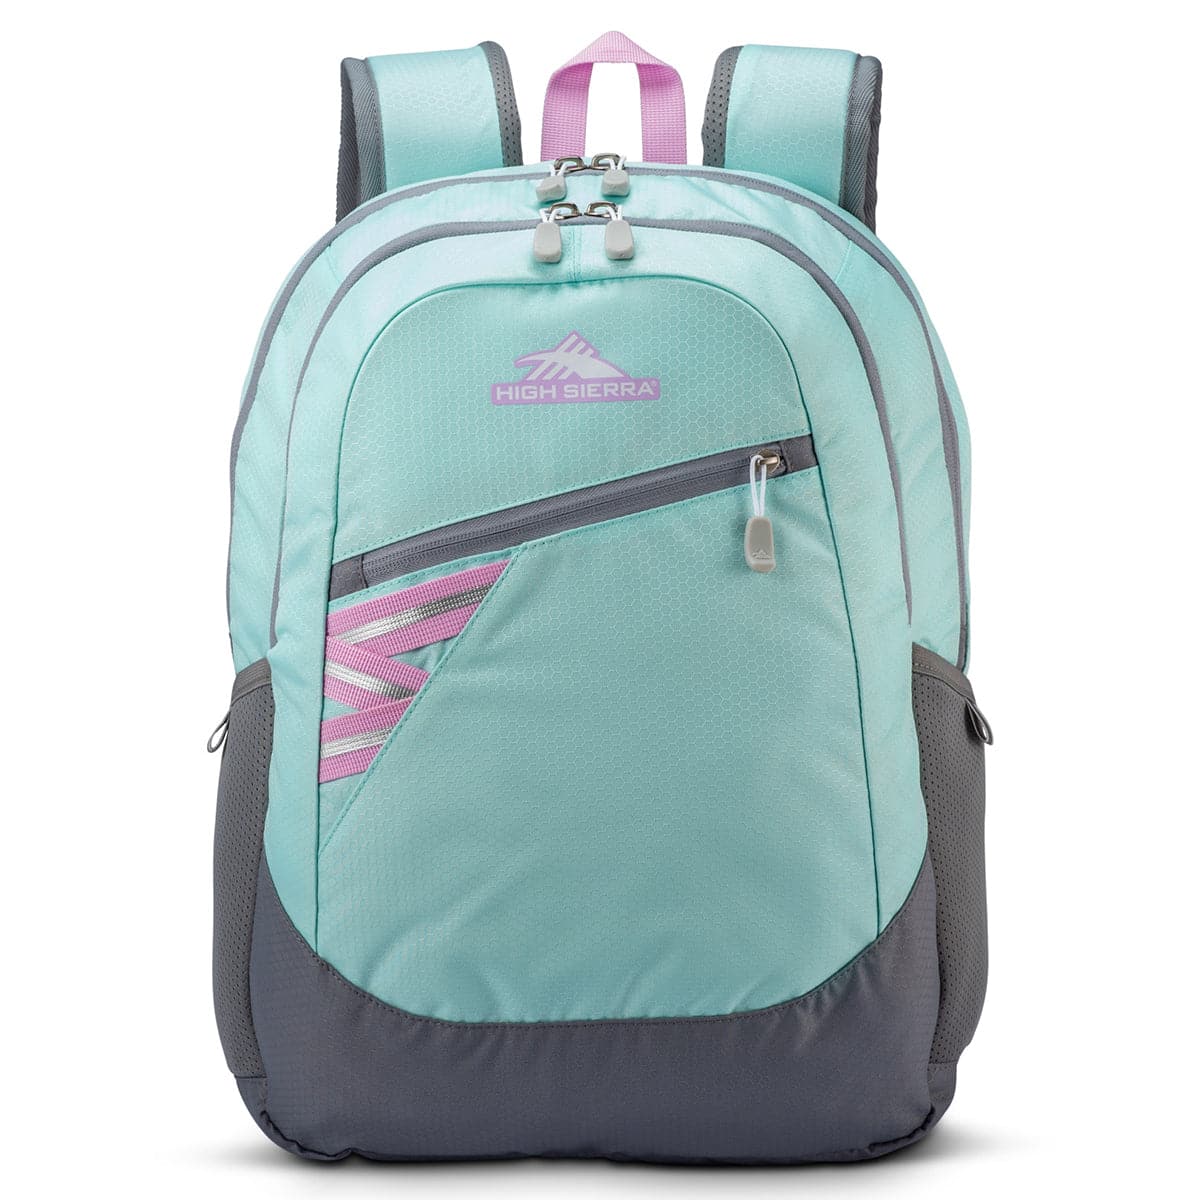 High Sierra Outburst 2 Laptop Backpack